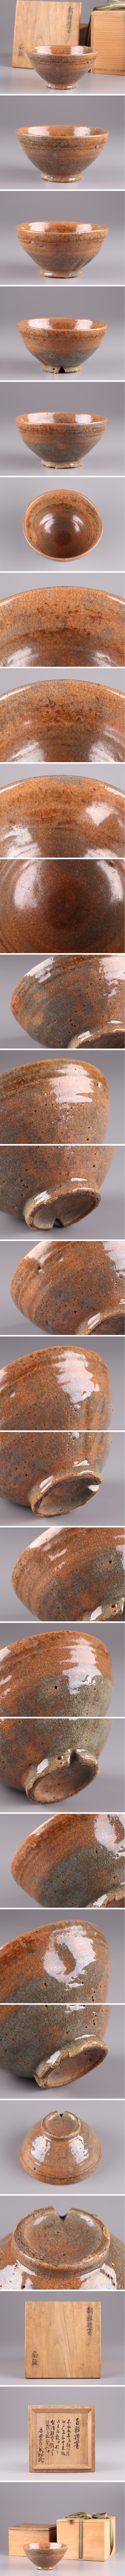 春の新作古美術 朝鮮古陶磁器 朝鮮禮宝 茶碗 書付 二重箱 時代物 極上品 初だし品 1431 高麗